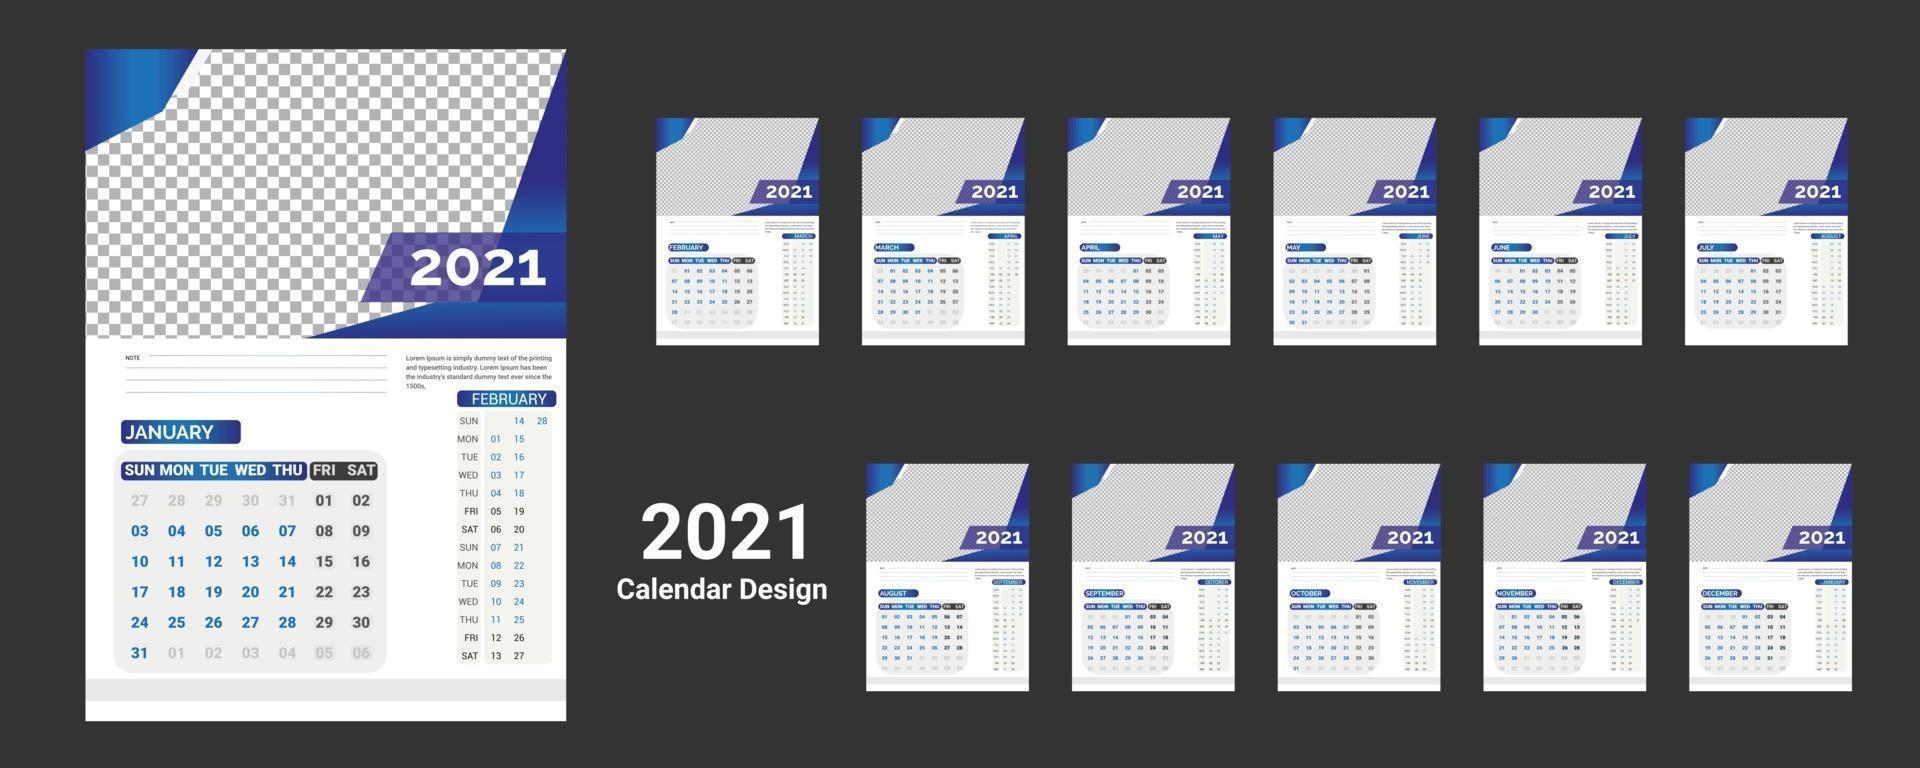 2022 Wandkalendervorlage für das neue Jahr Corporate Business modernes Unternehmen mit professionellem kreativem Design vektor